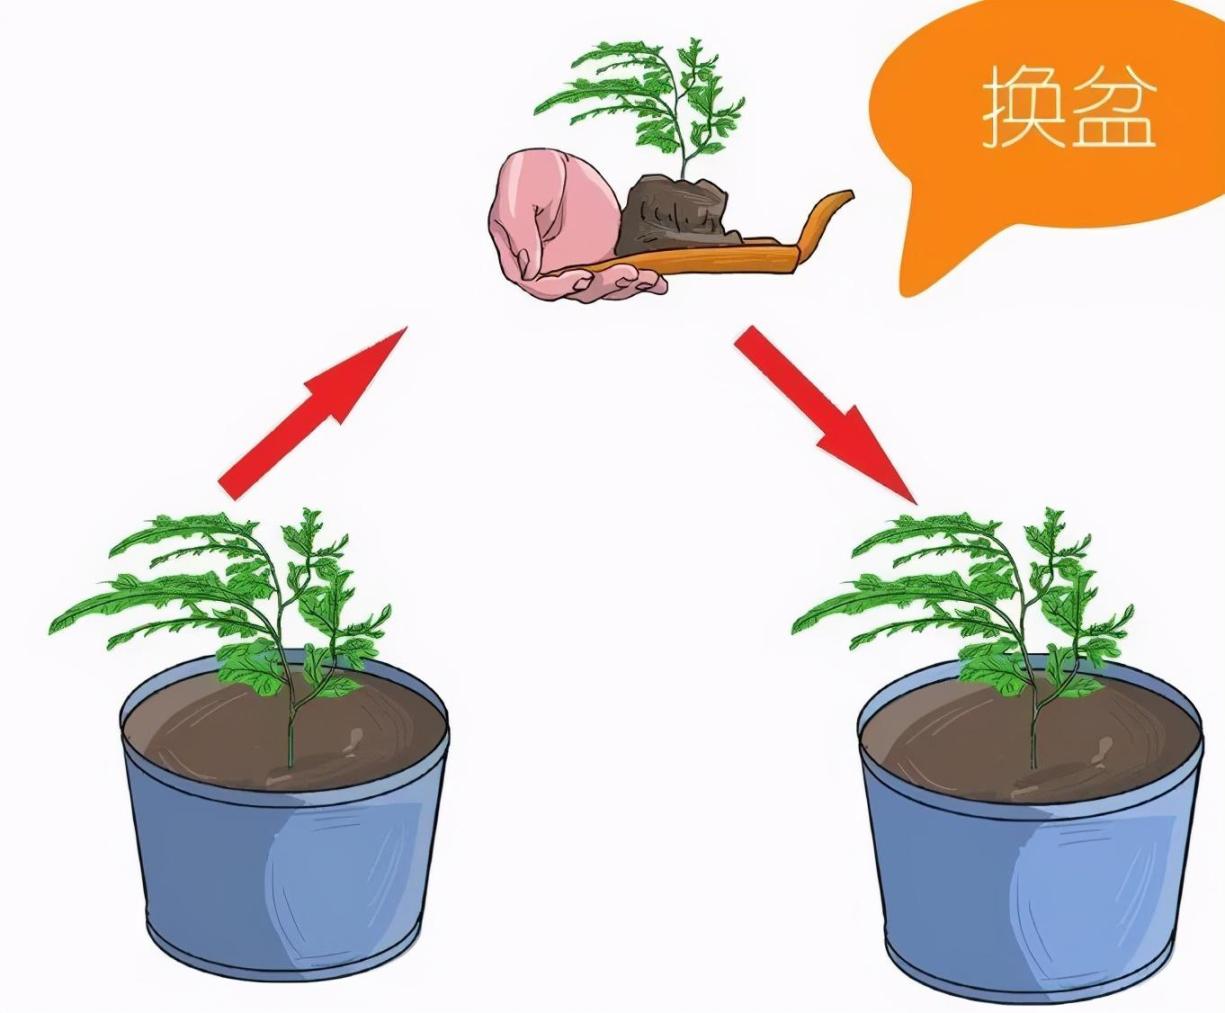 文竹的栽培方法和技巧